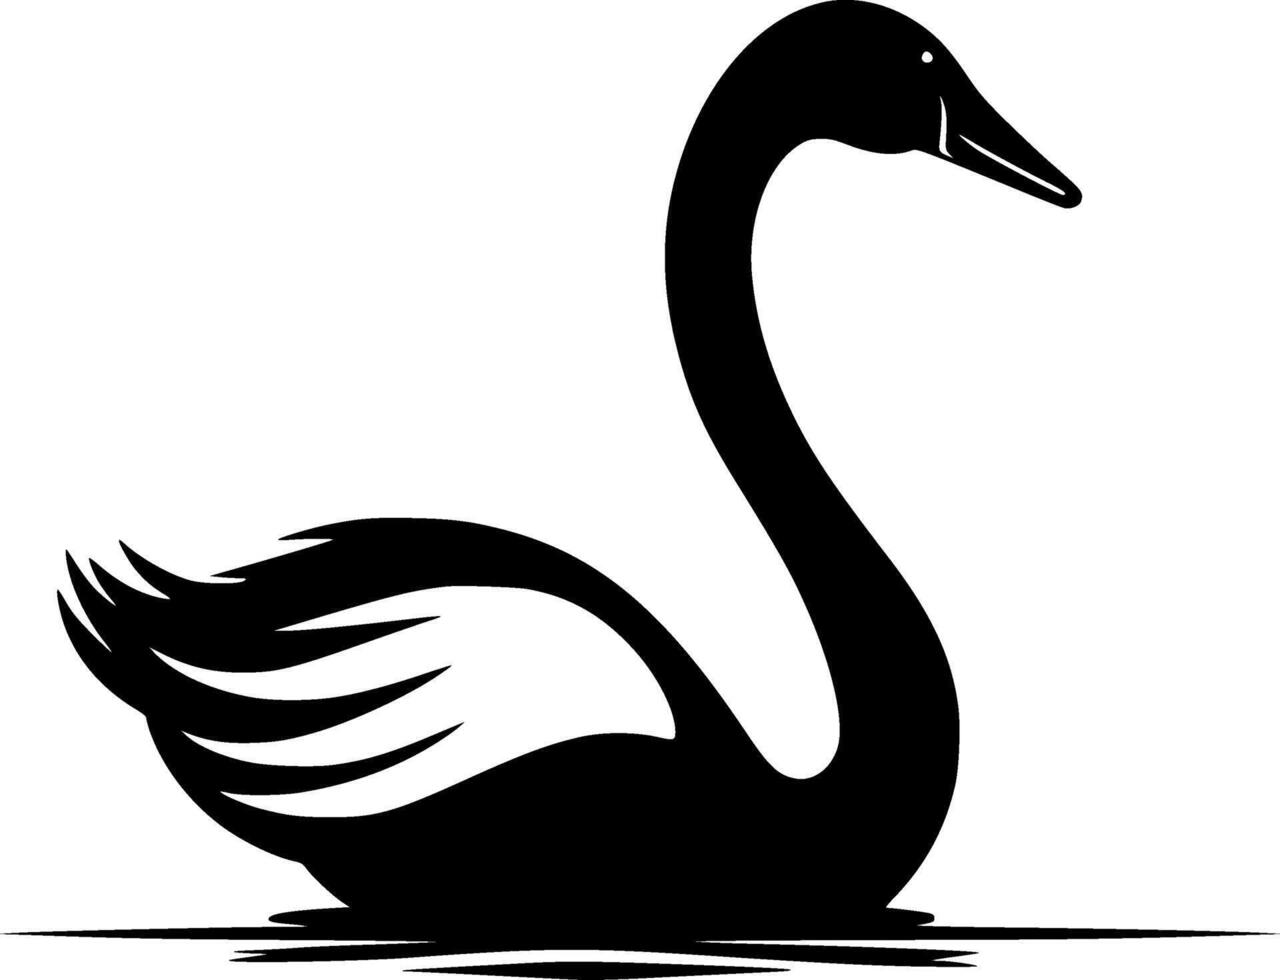 zwaan - zwart en wit geïsoleerd icoon - vector illustratie